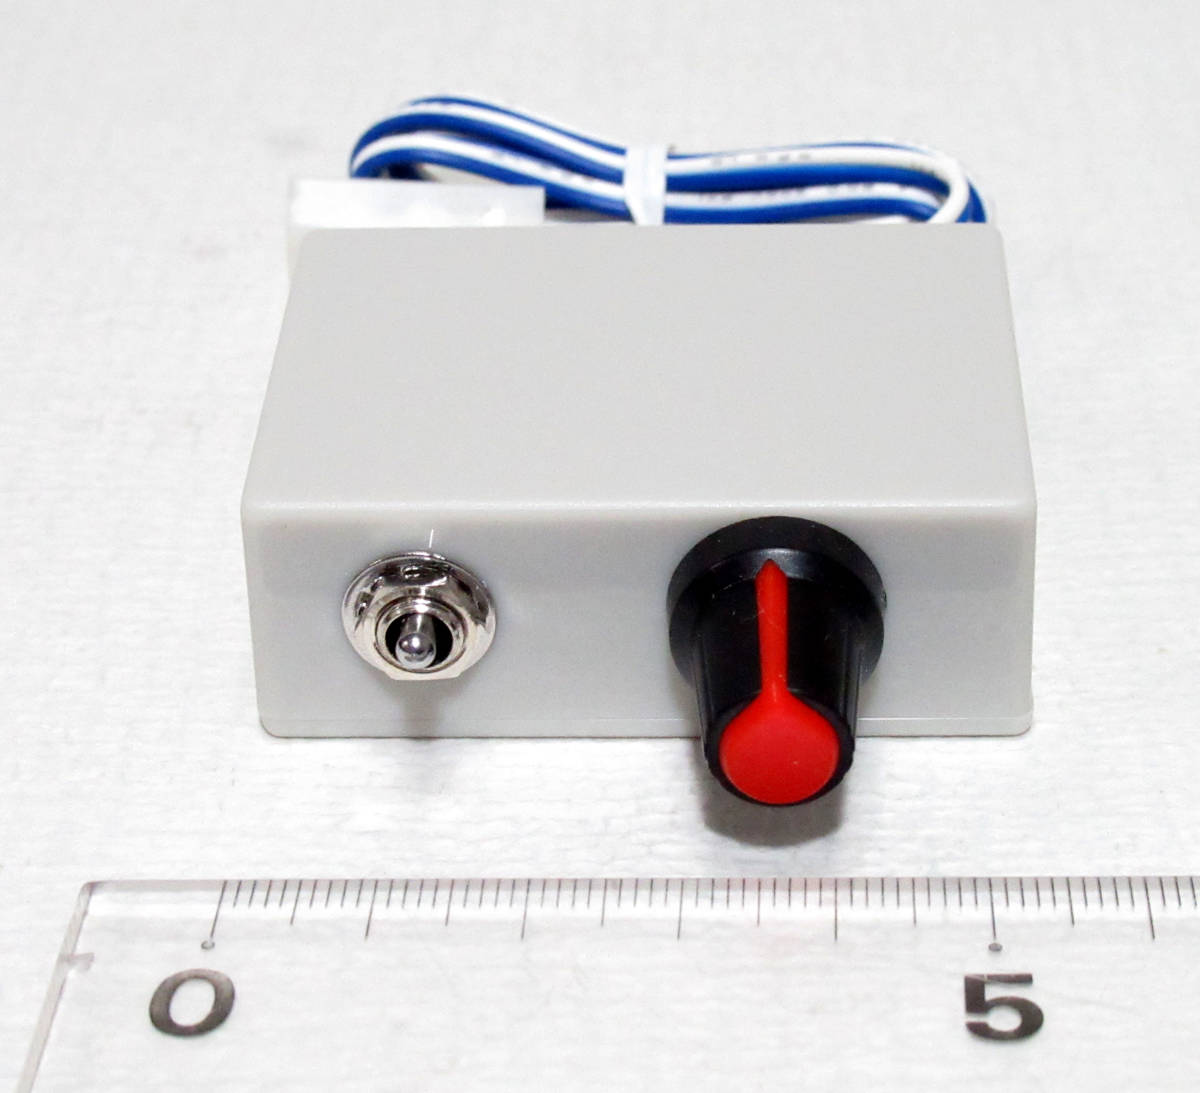 超小型パワーパック KATO用 PWM無段階速度制御 12V1A ケースサイズ 5.5cm x 4cm x 2cmの画像3